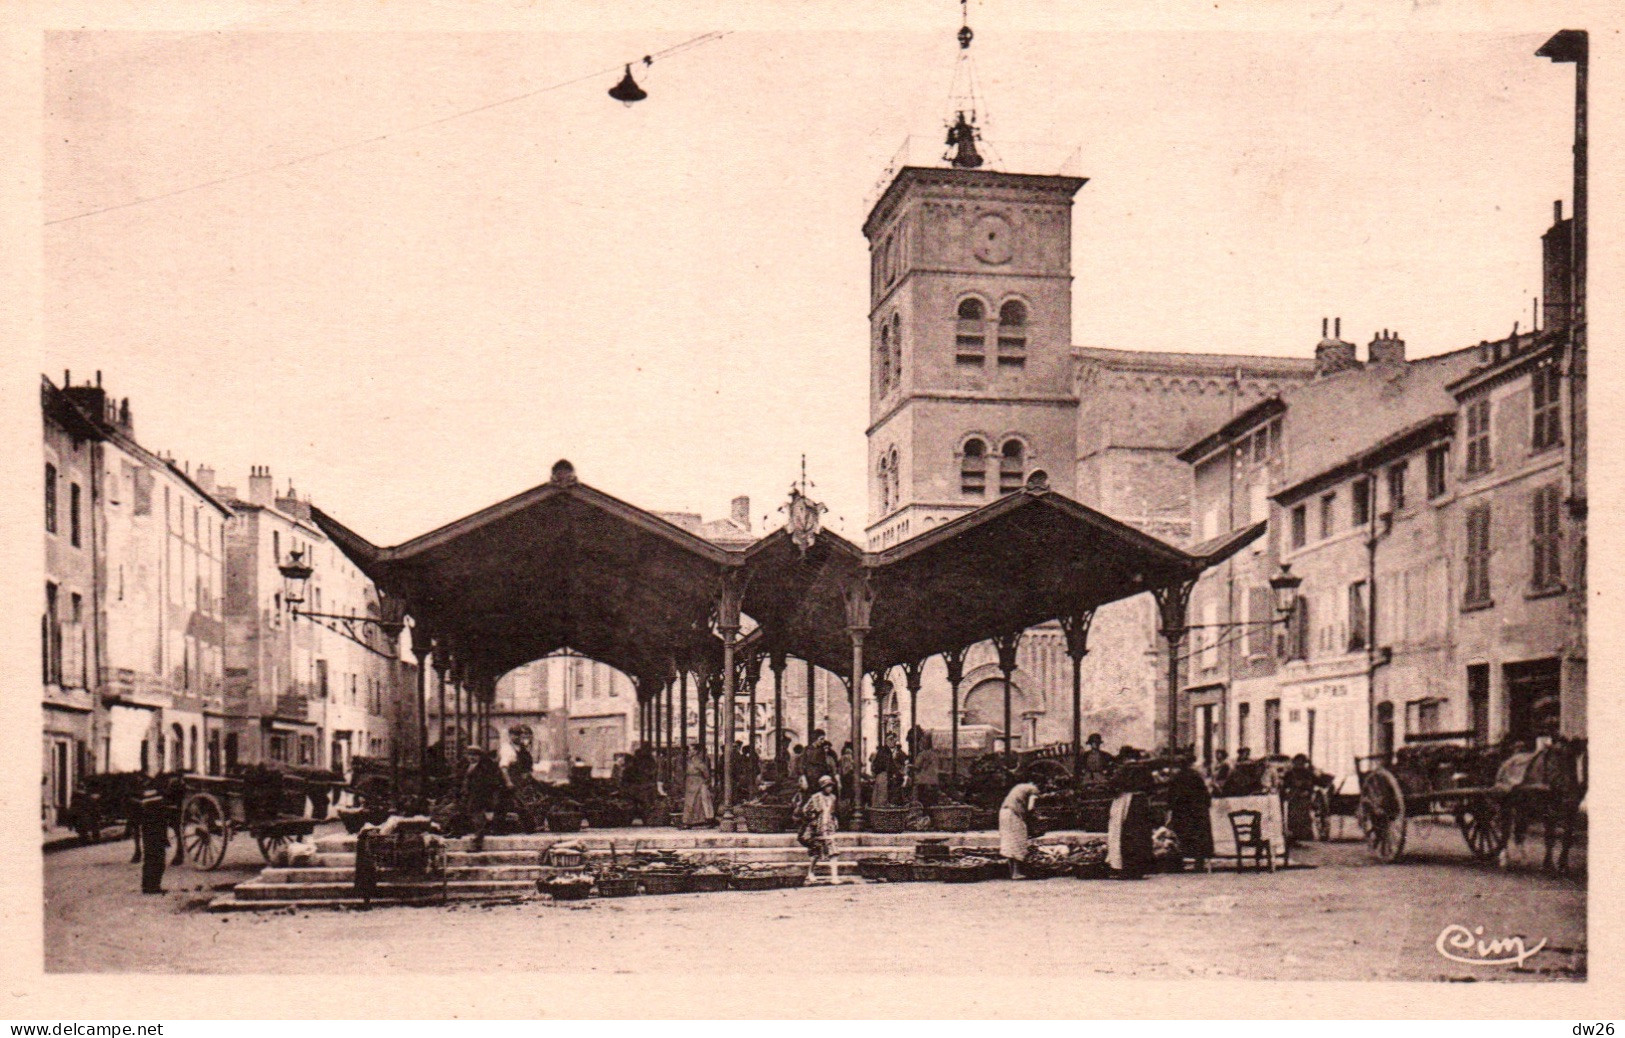 Valence - La Place Belat, Eglise St Saint-Jean (Clocher Carolingien) Et Marché Couvert - Carte CIM Non Circulée - Valence